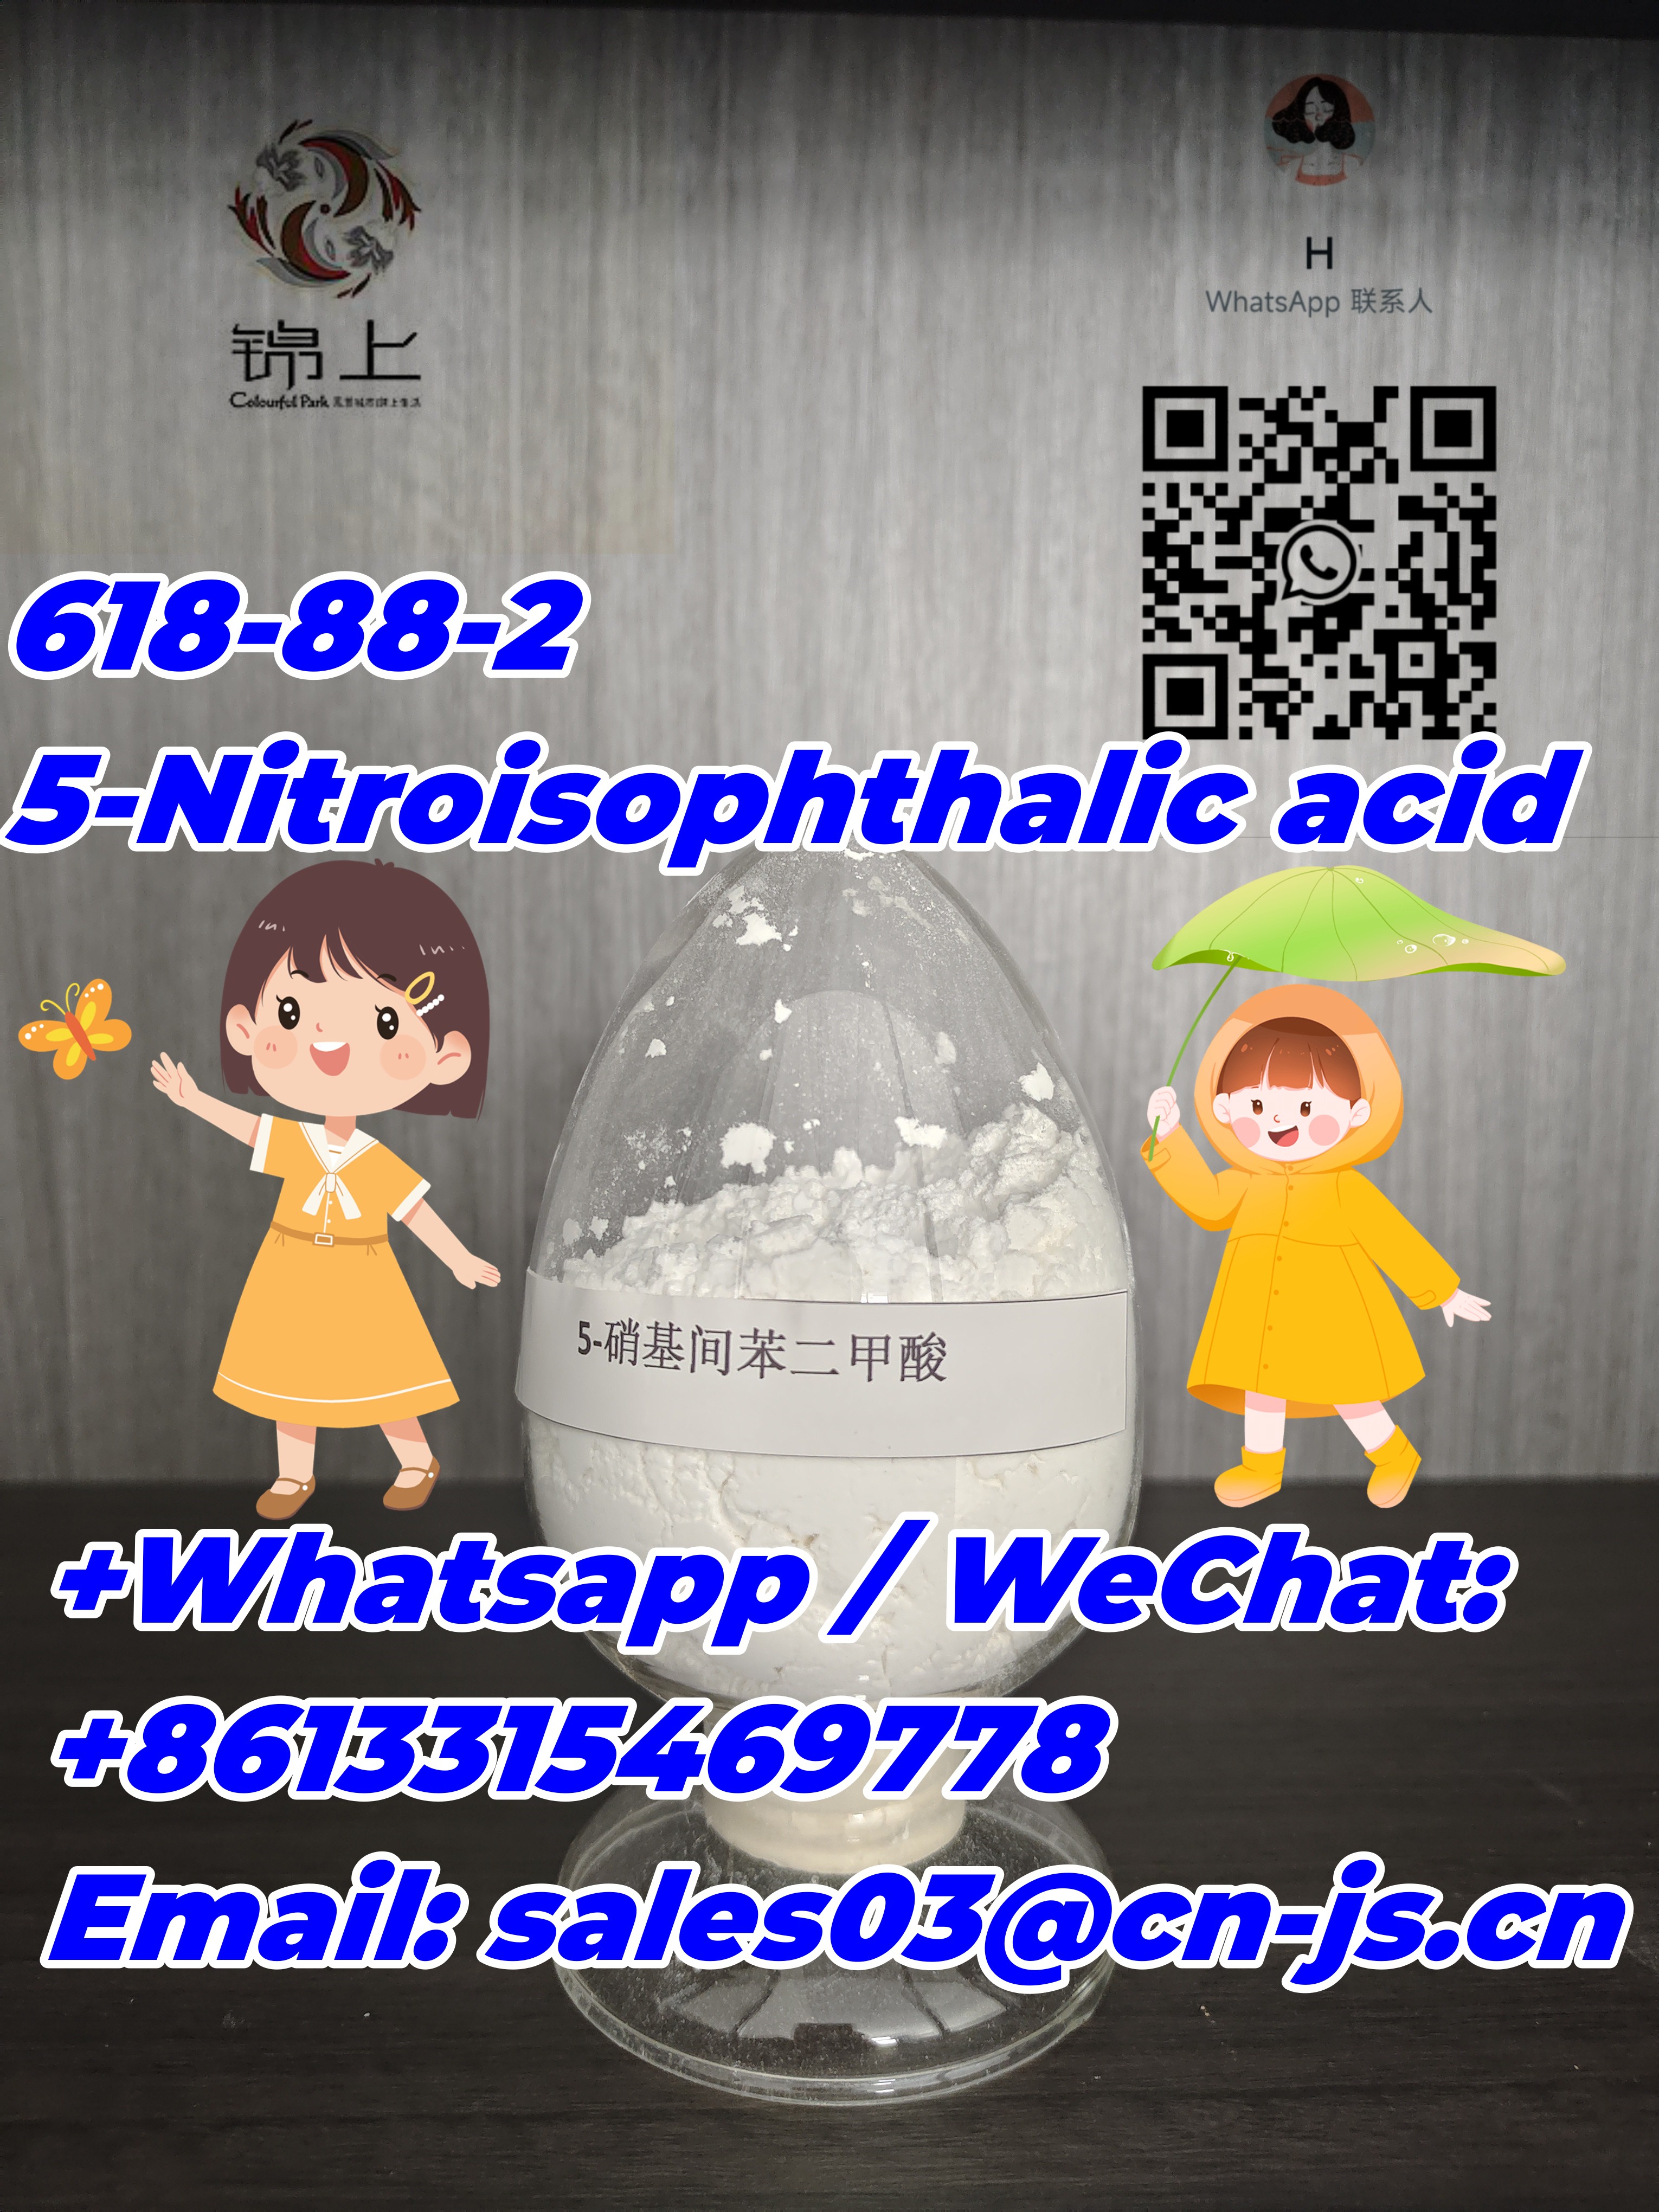 sell like hot cakes  618-88-2，5-Nitroisophthalic acid